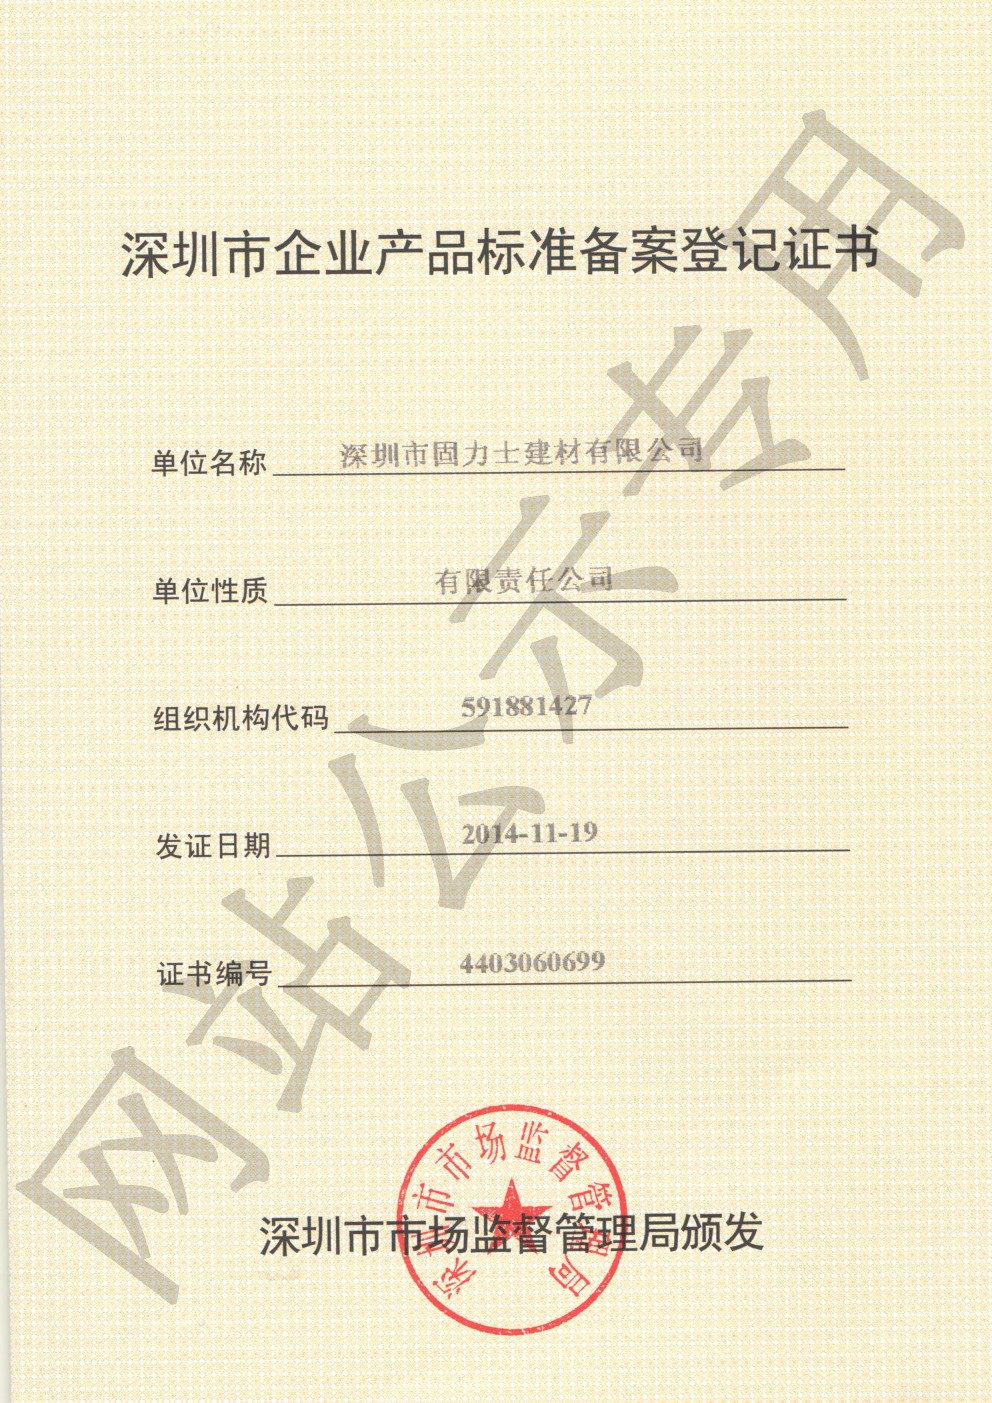 德惠企业产品标准登记证书